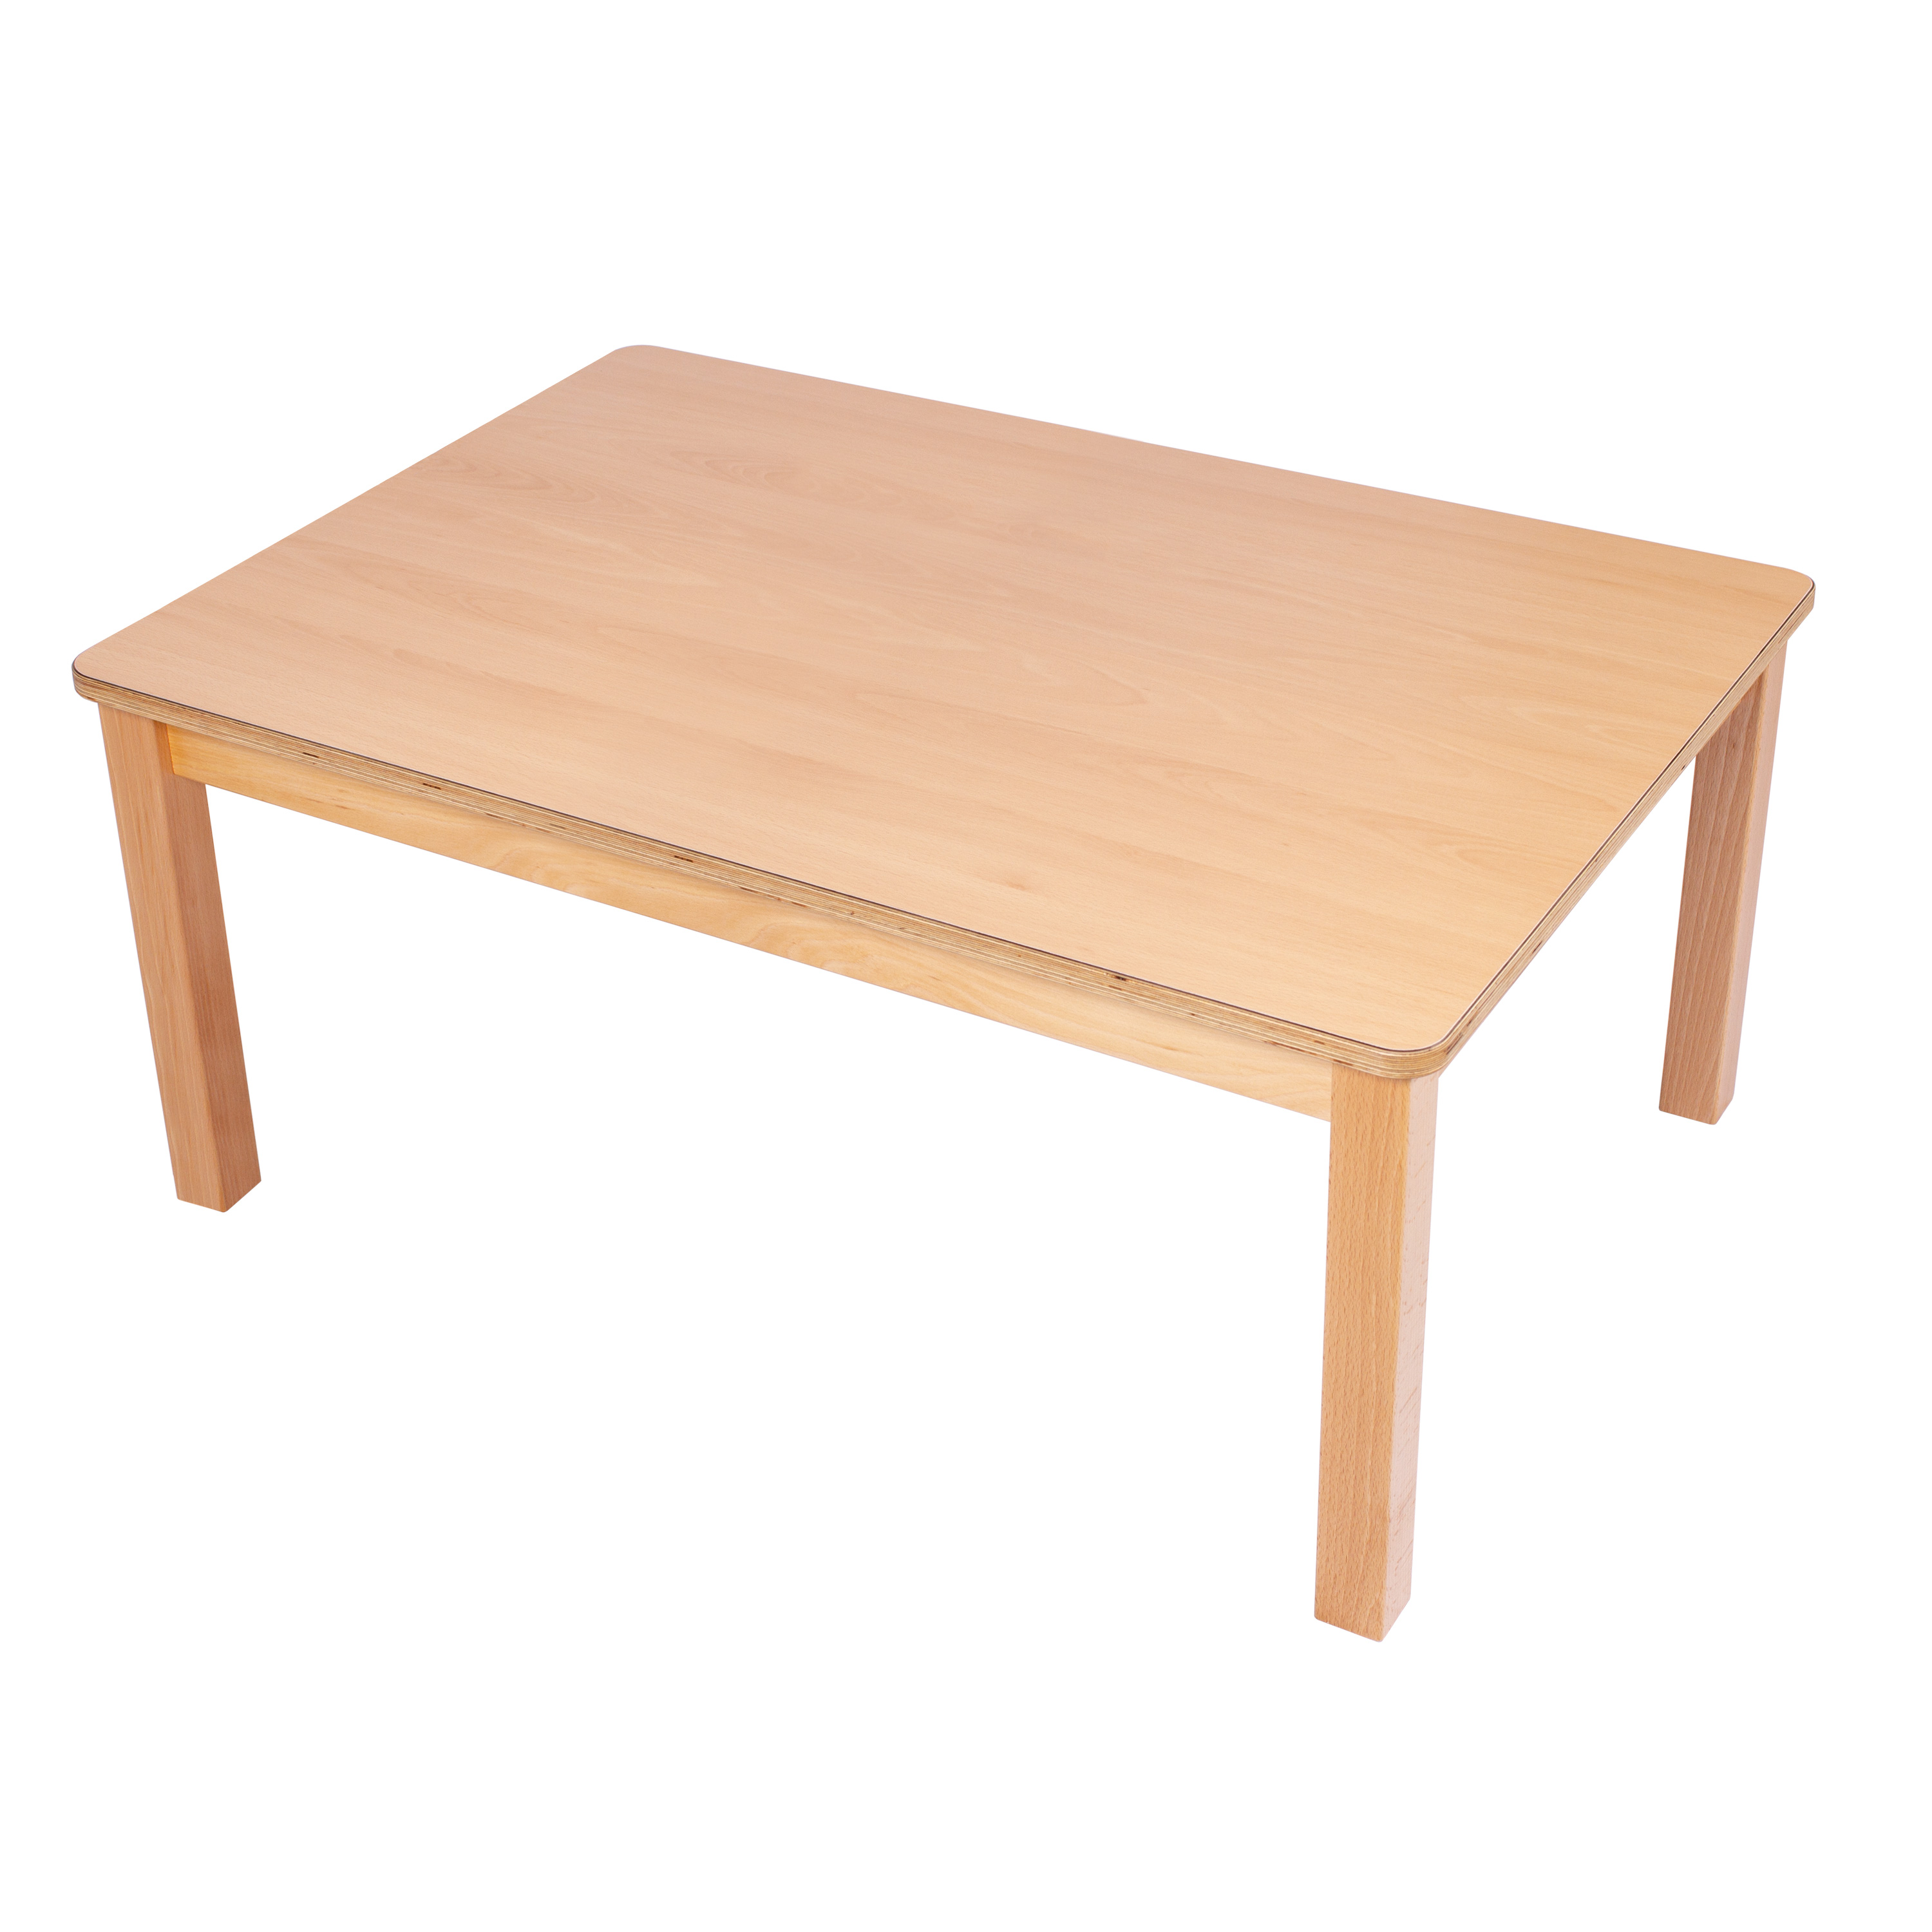 U3-Rechteck-Tisch 120 x 60 cm, Ecken gerundet, H: 34 cm